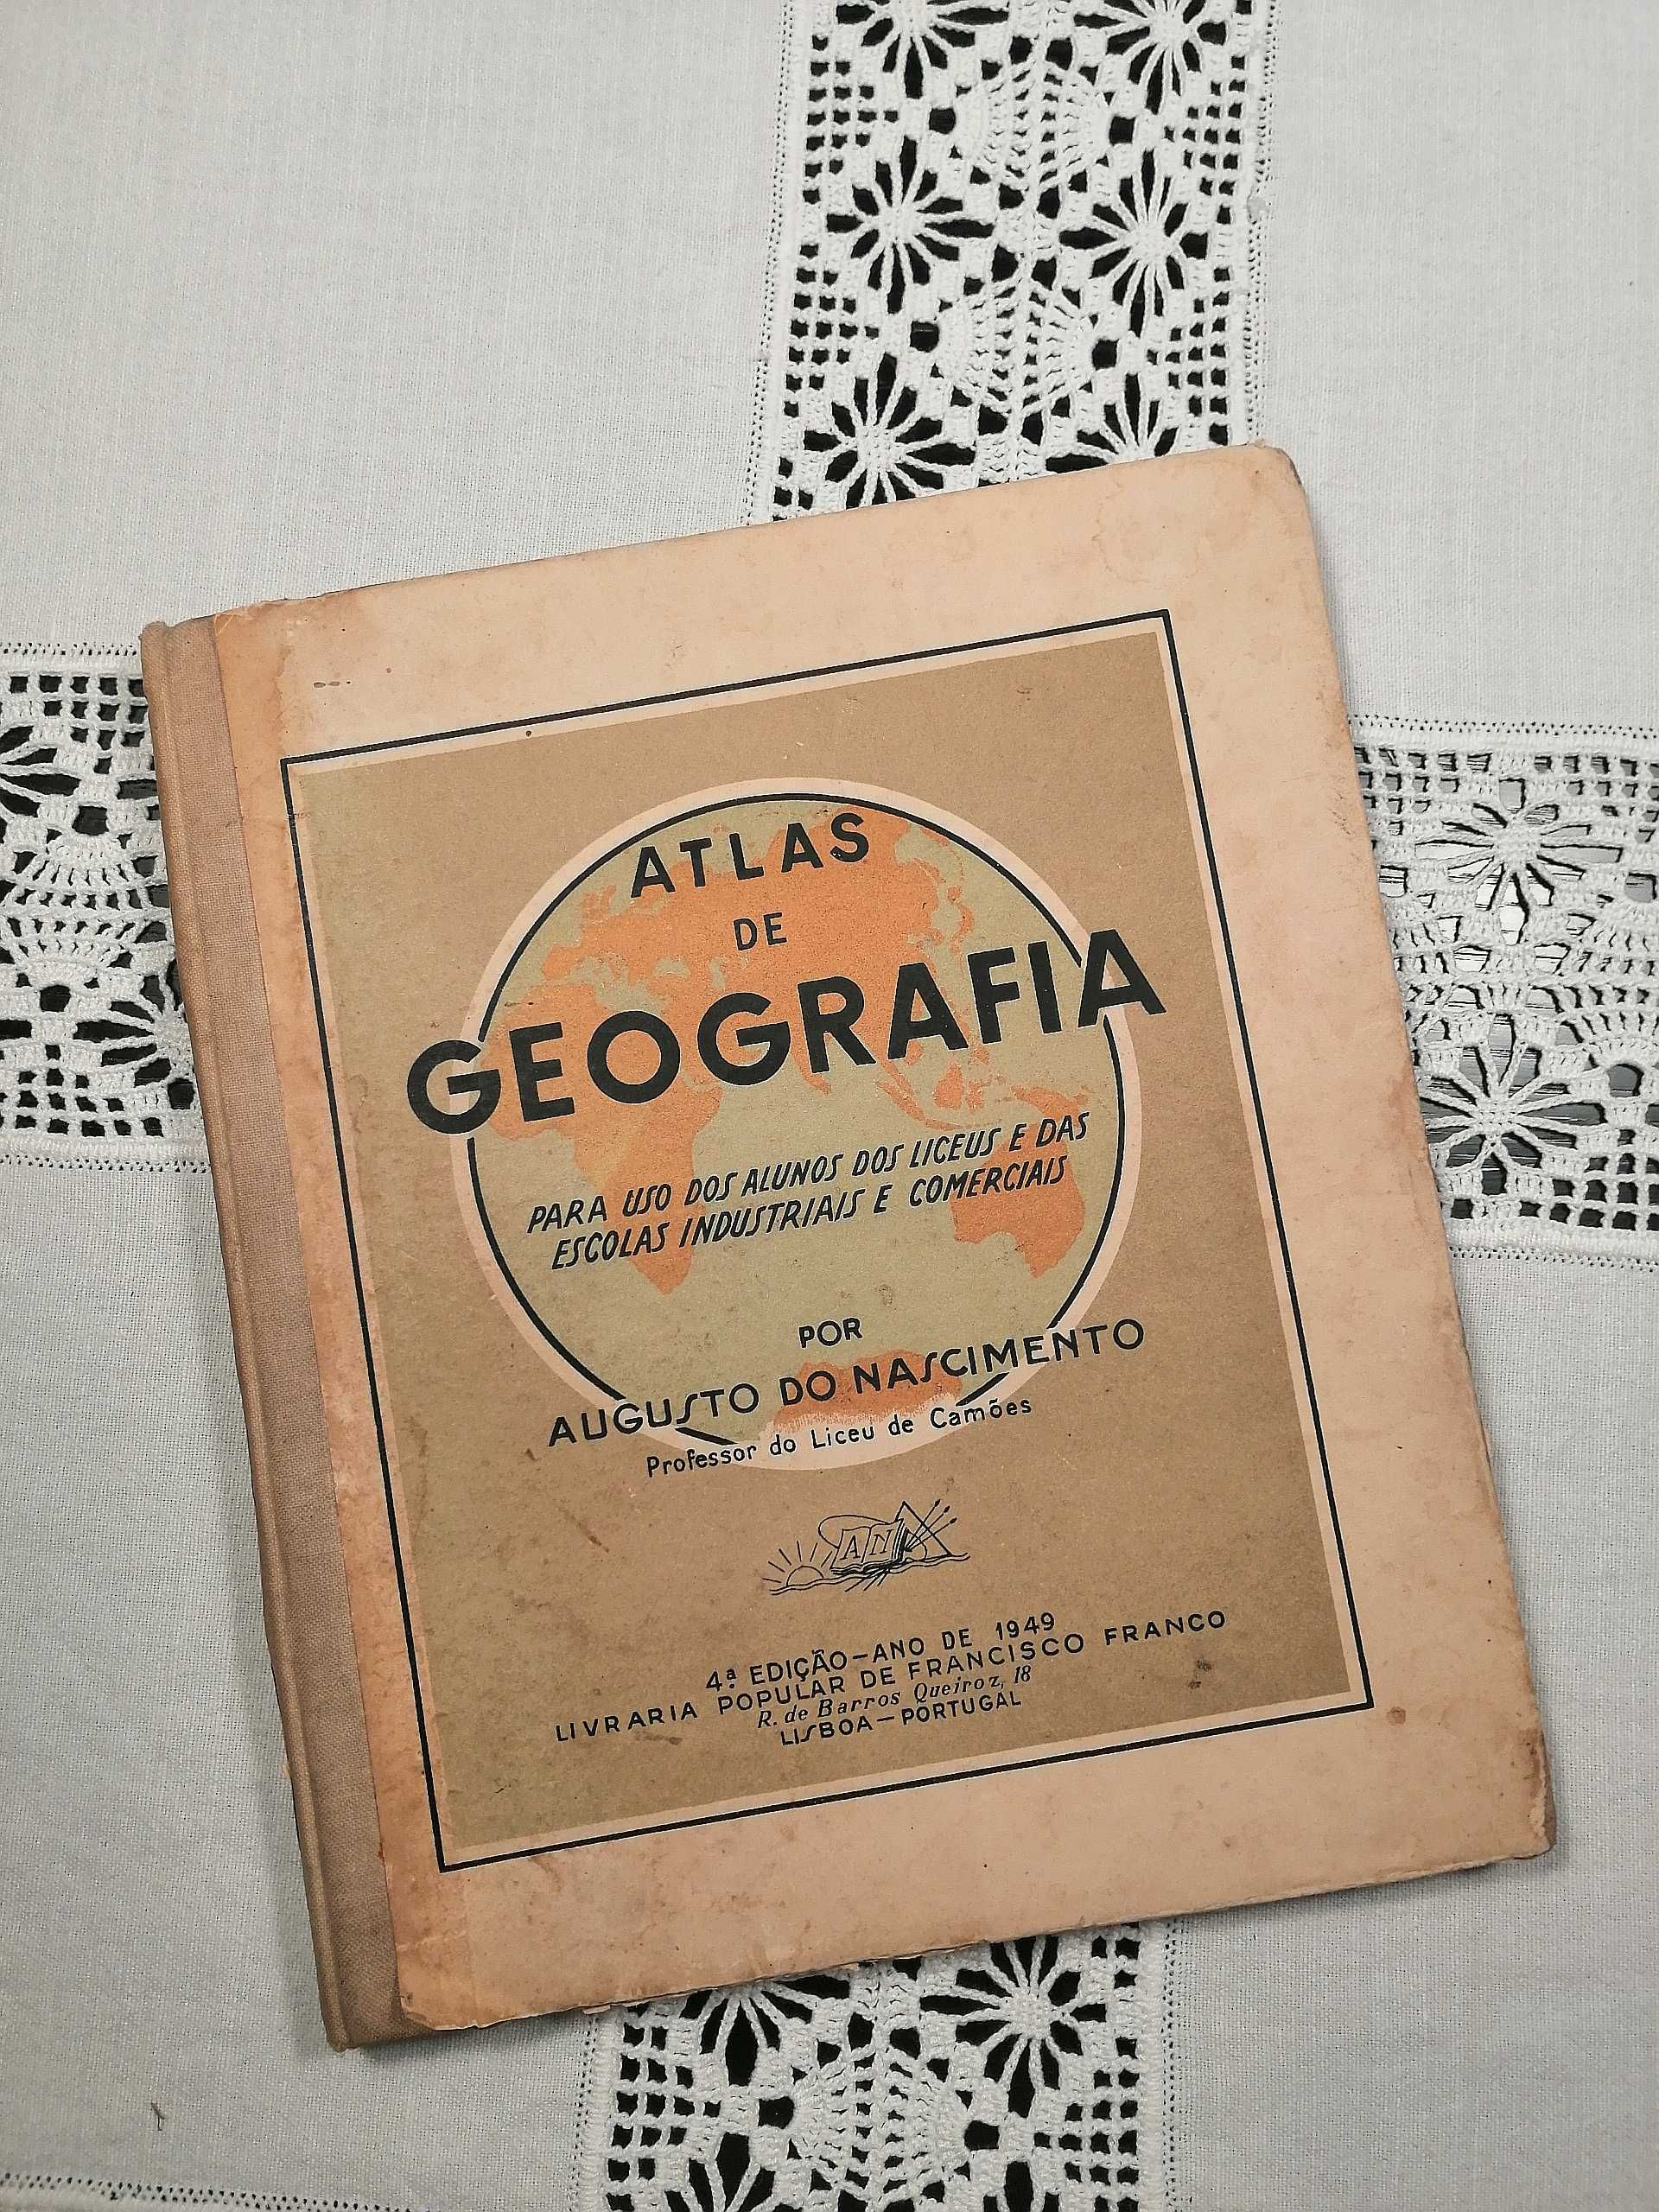 Atlas de Geografia - Augusto Do Nascimento